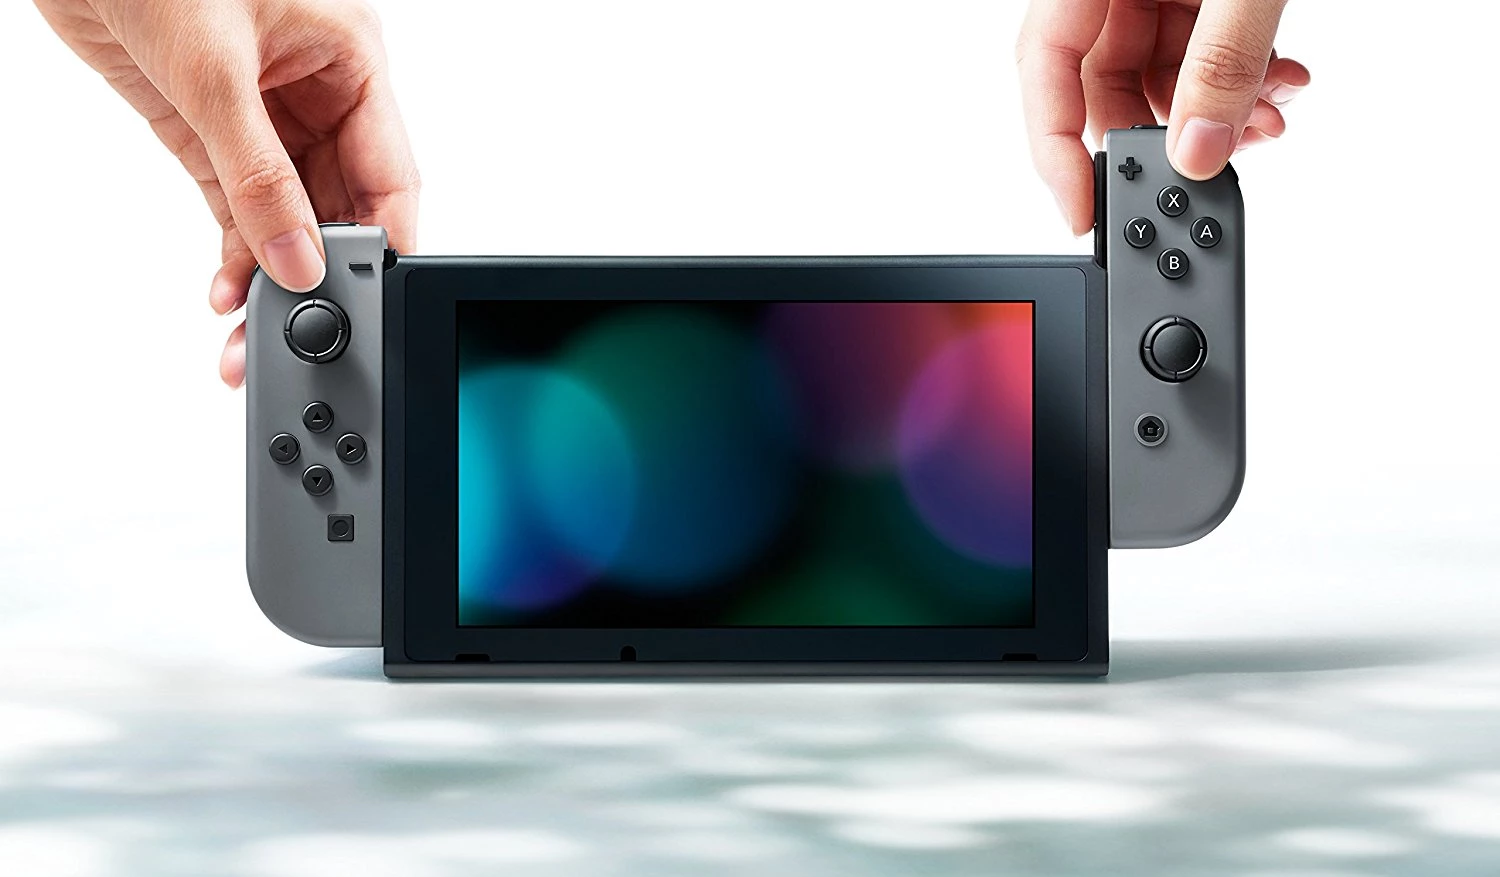 Nintendo Switch (2019 upgrade) - Grey (LEVERING 1) voor de Nintendo Switch kopen op nedgame.nl